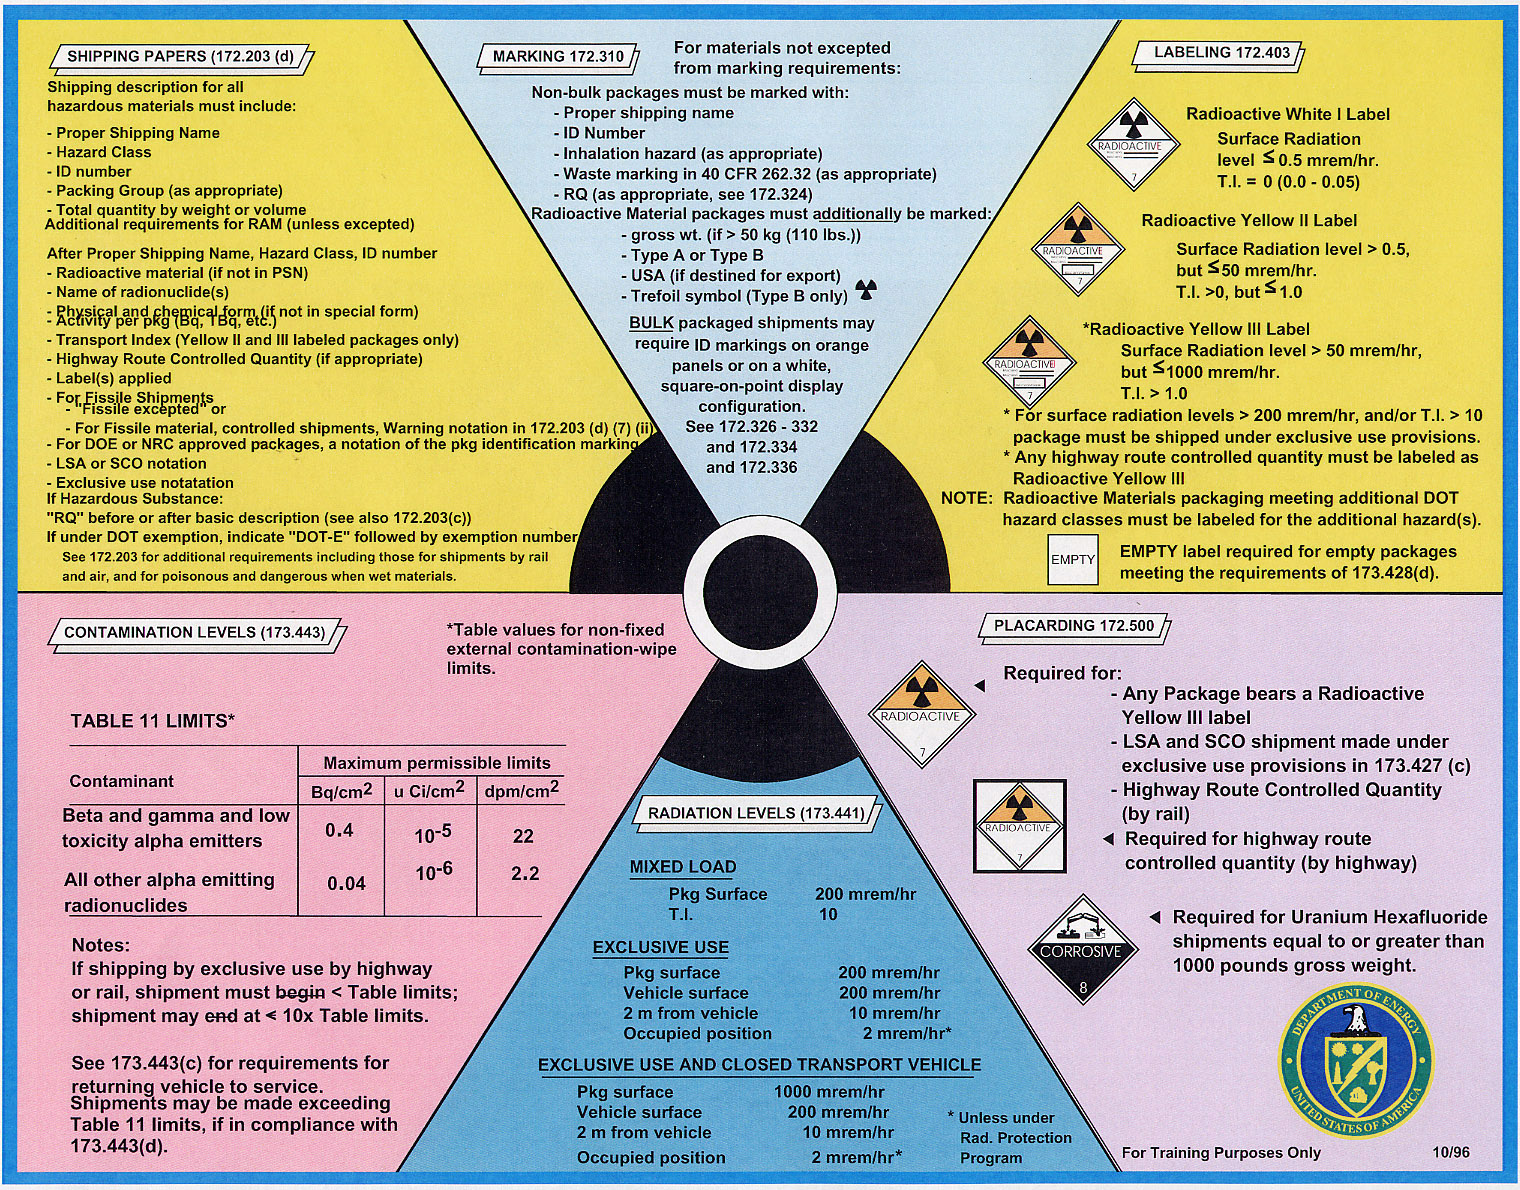 RadiationIncidents Training&Education